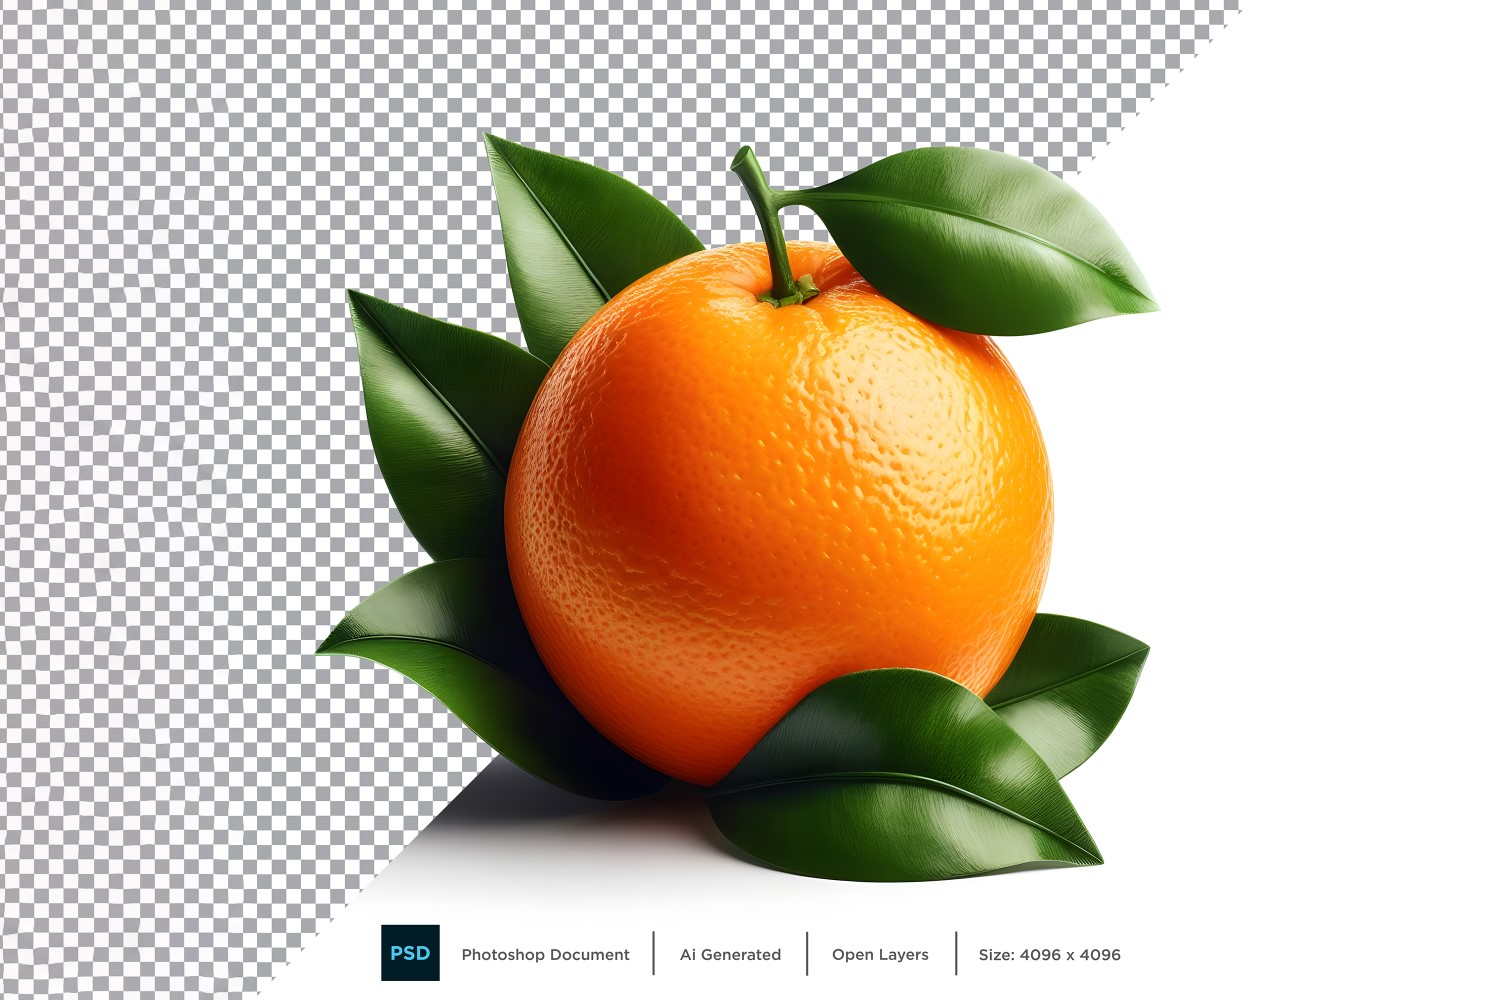 Orange Fresh fruit isolated on white background 5